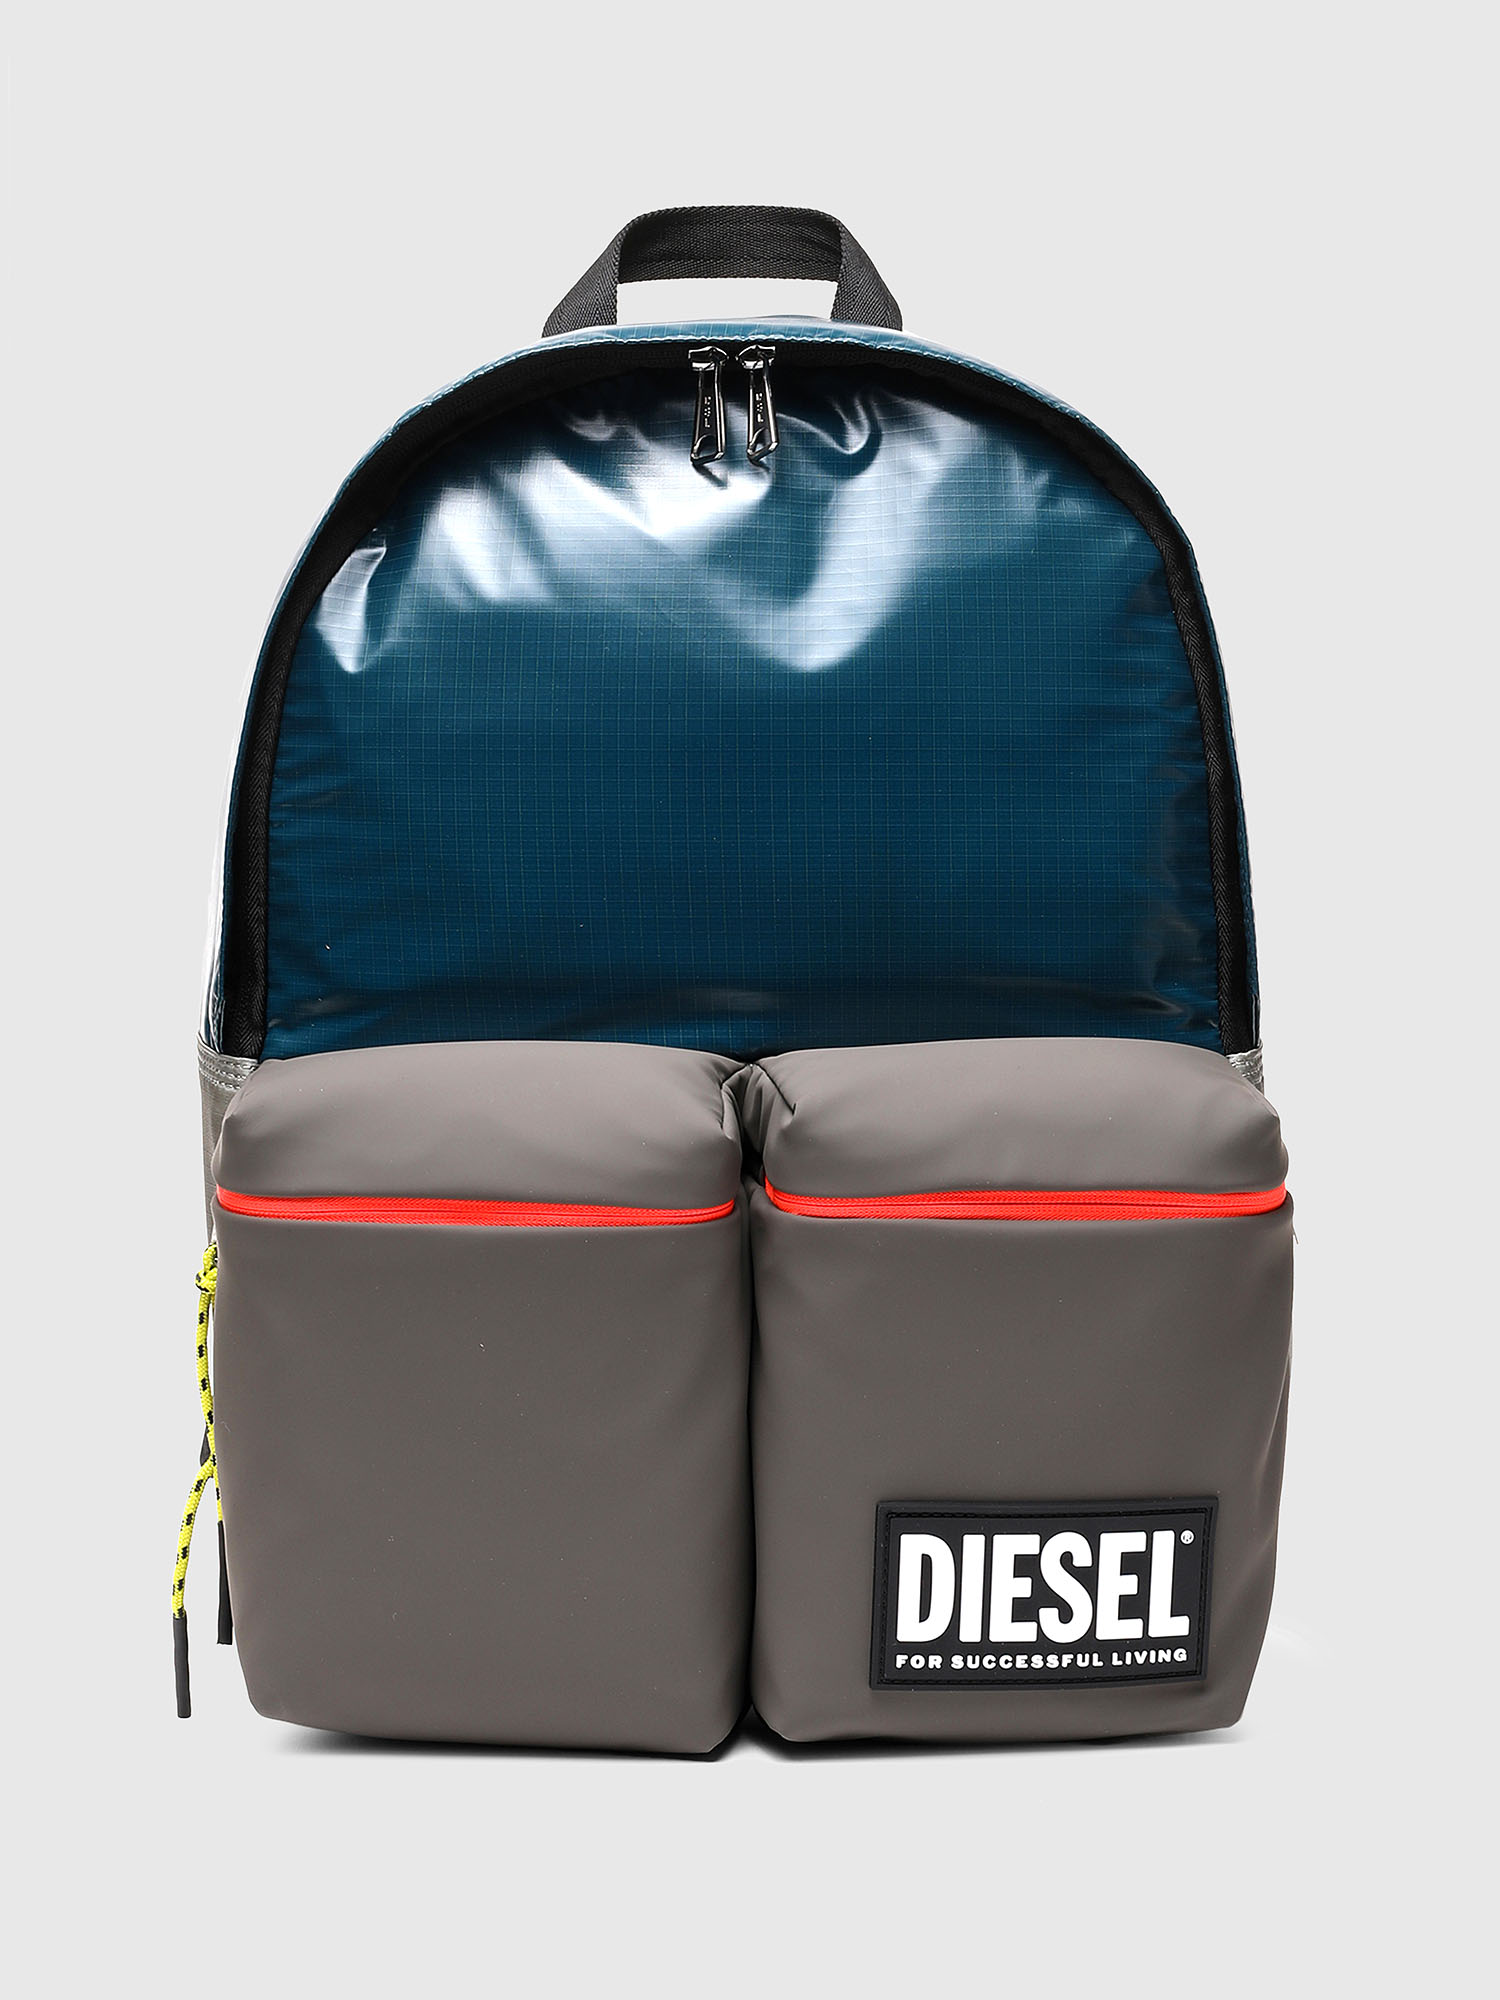 Shop on Diesel.com